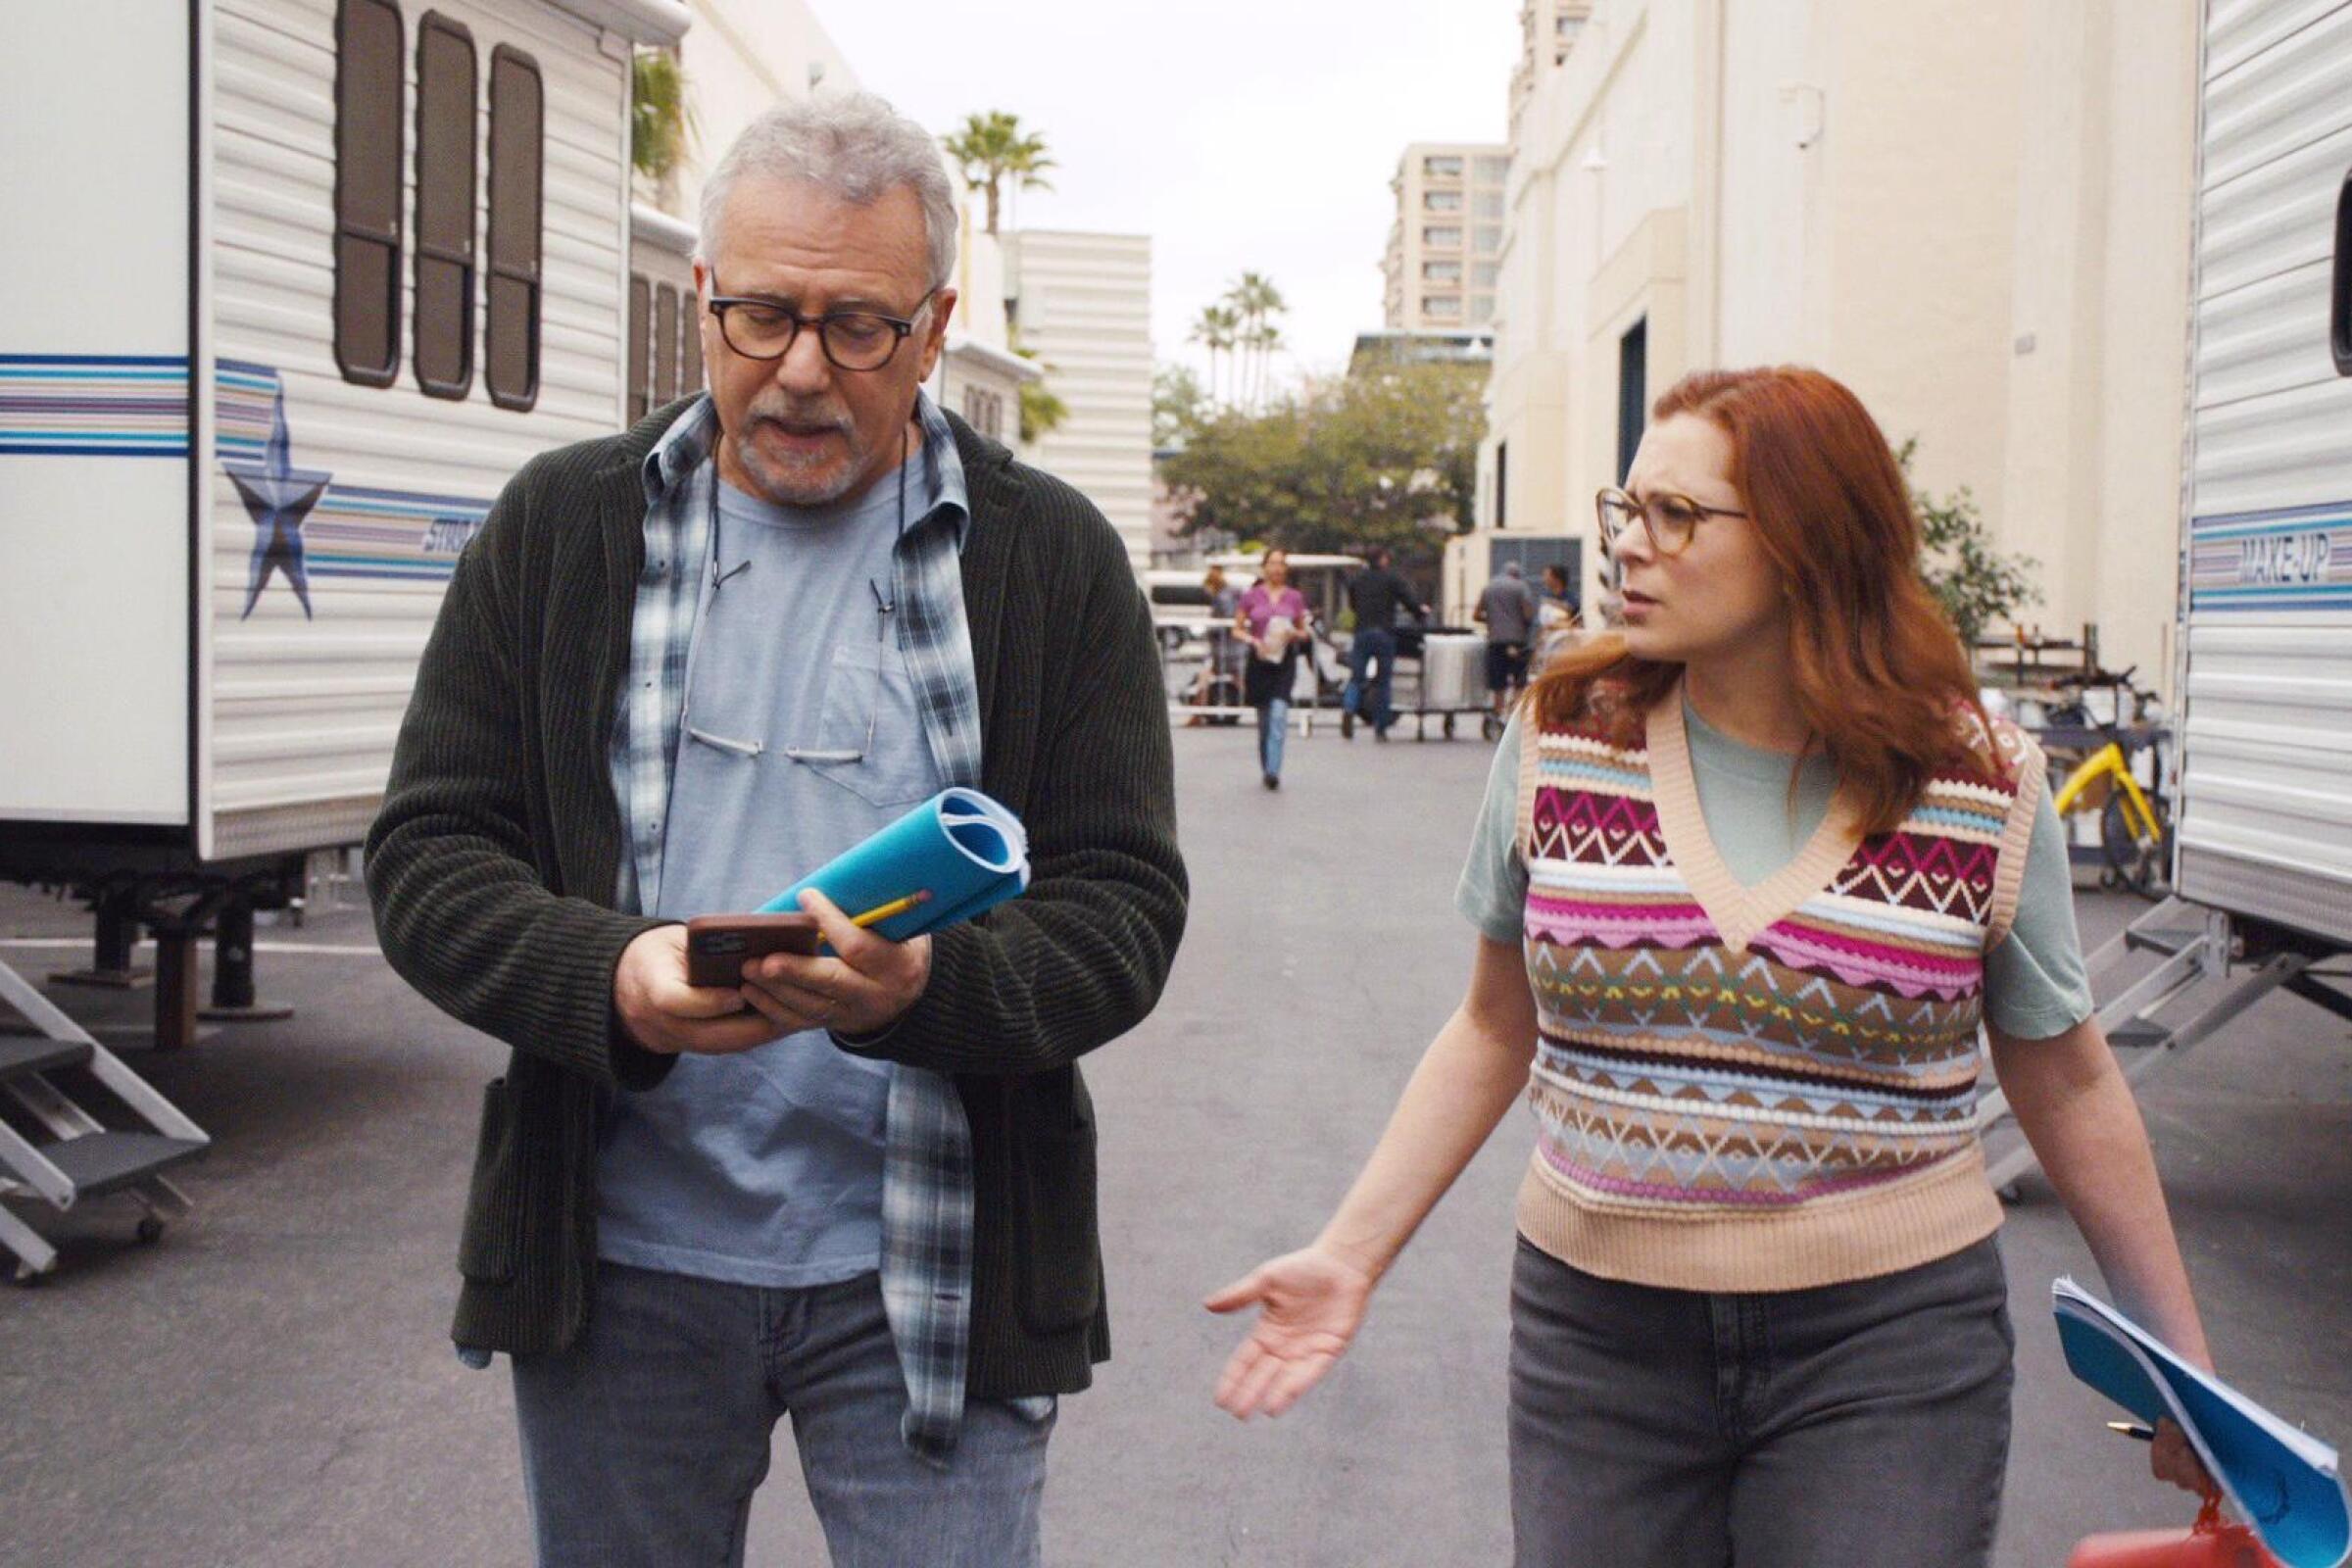 Paul Reiser and Rachel Bloom co-star in "Reboot," a new Hulu comedy series